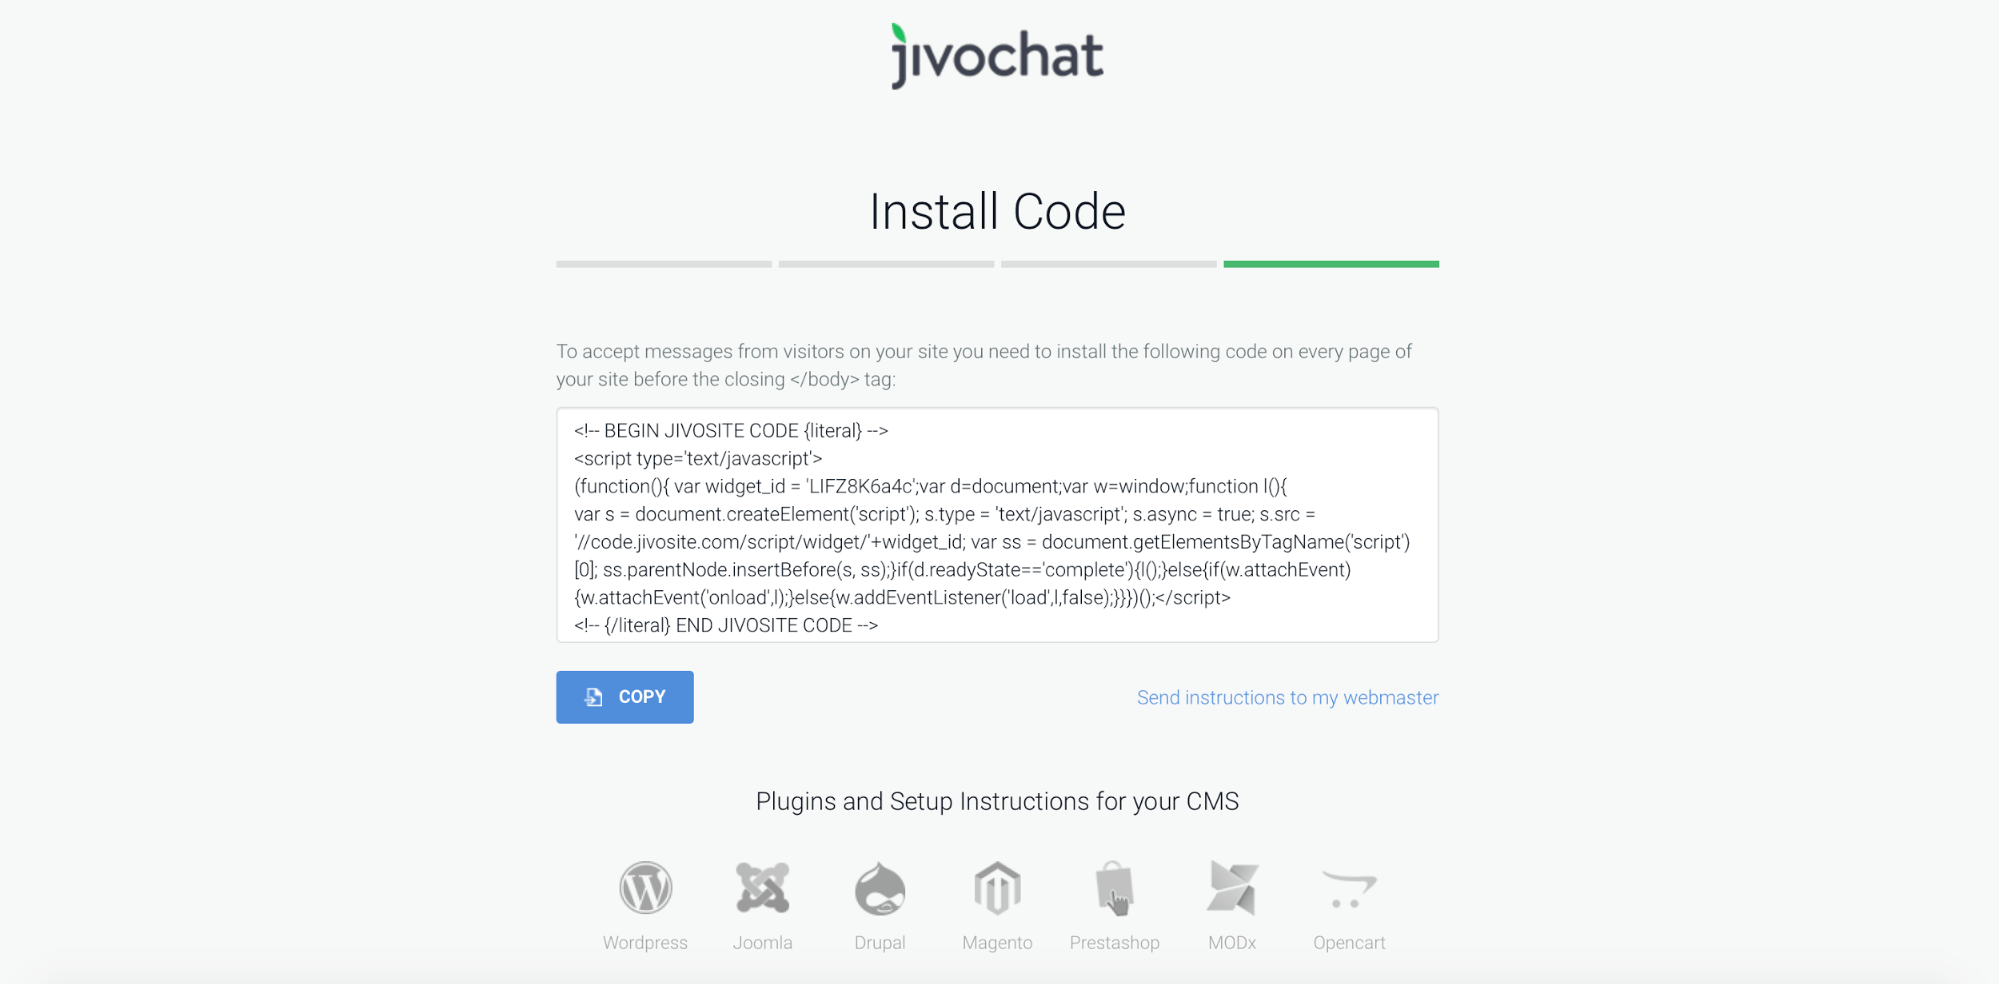 jivochat installation code